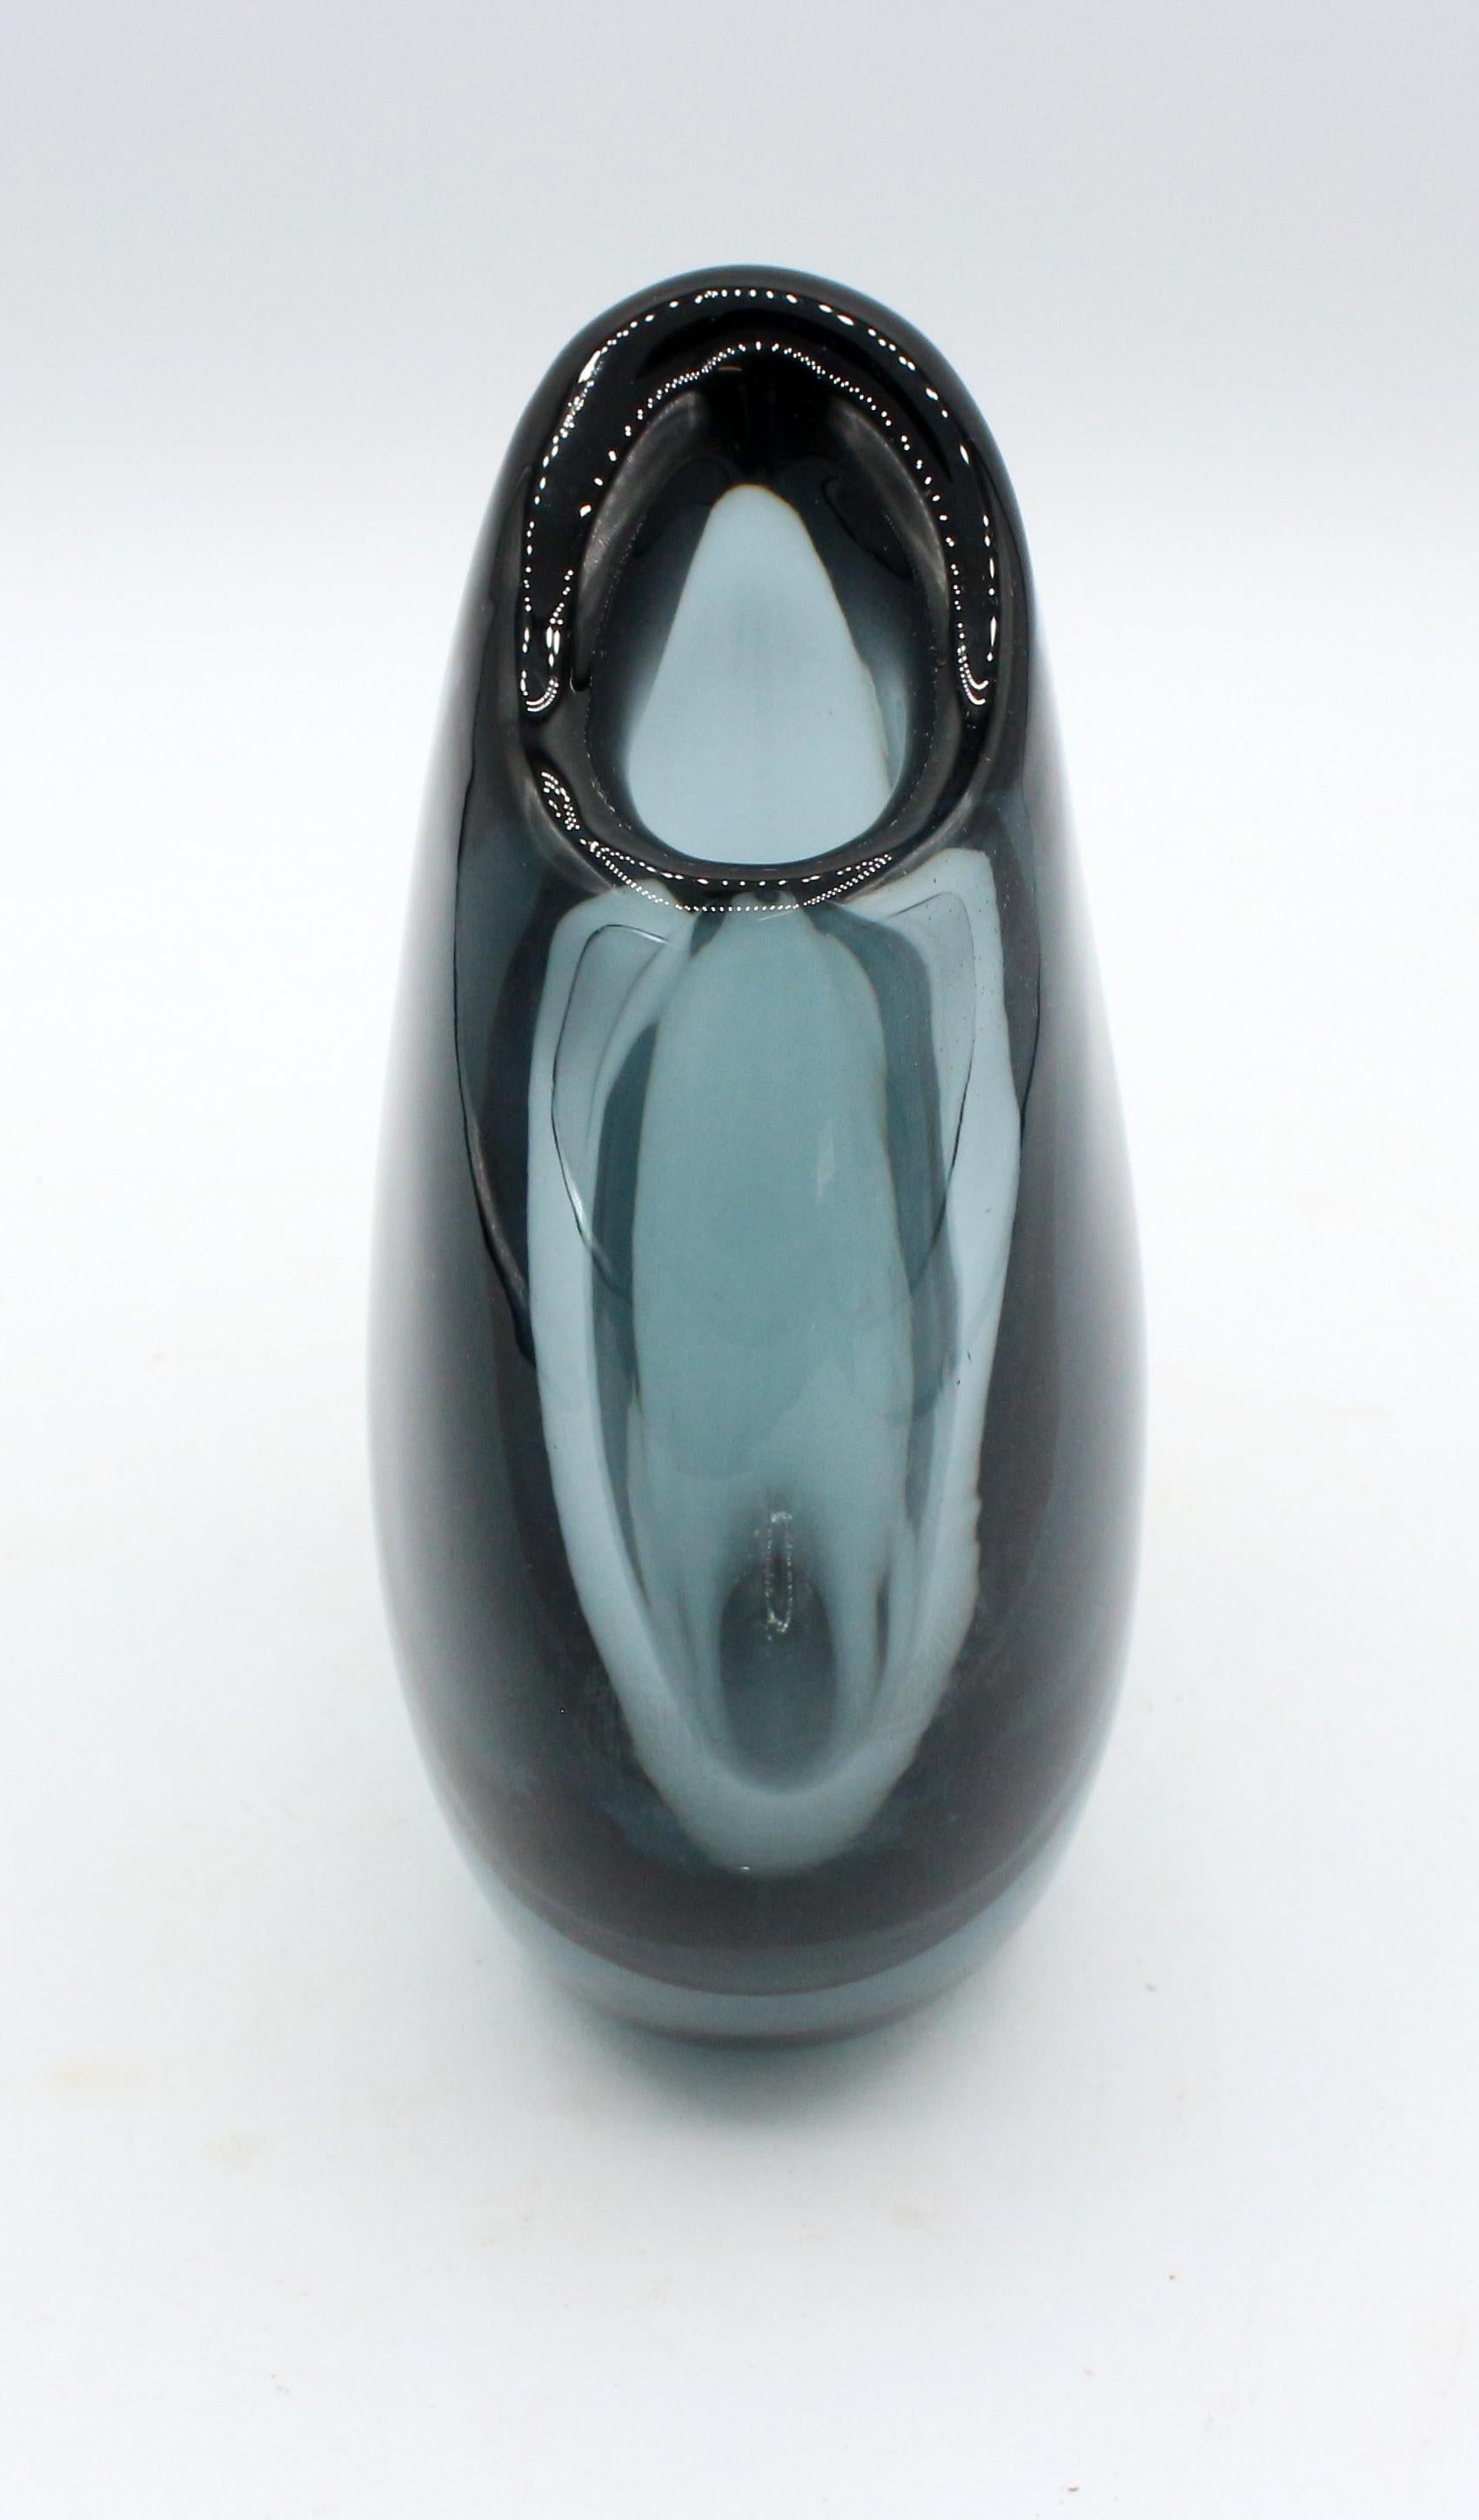 Signierte Kosta Vase in Tiefseeblau, ca. 1960er Jahre. Groß und elegant, asymmetrisch. Kennzeichnung 